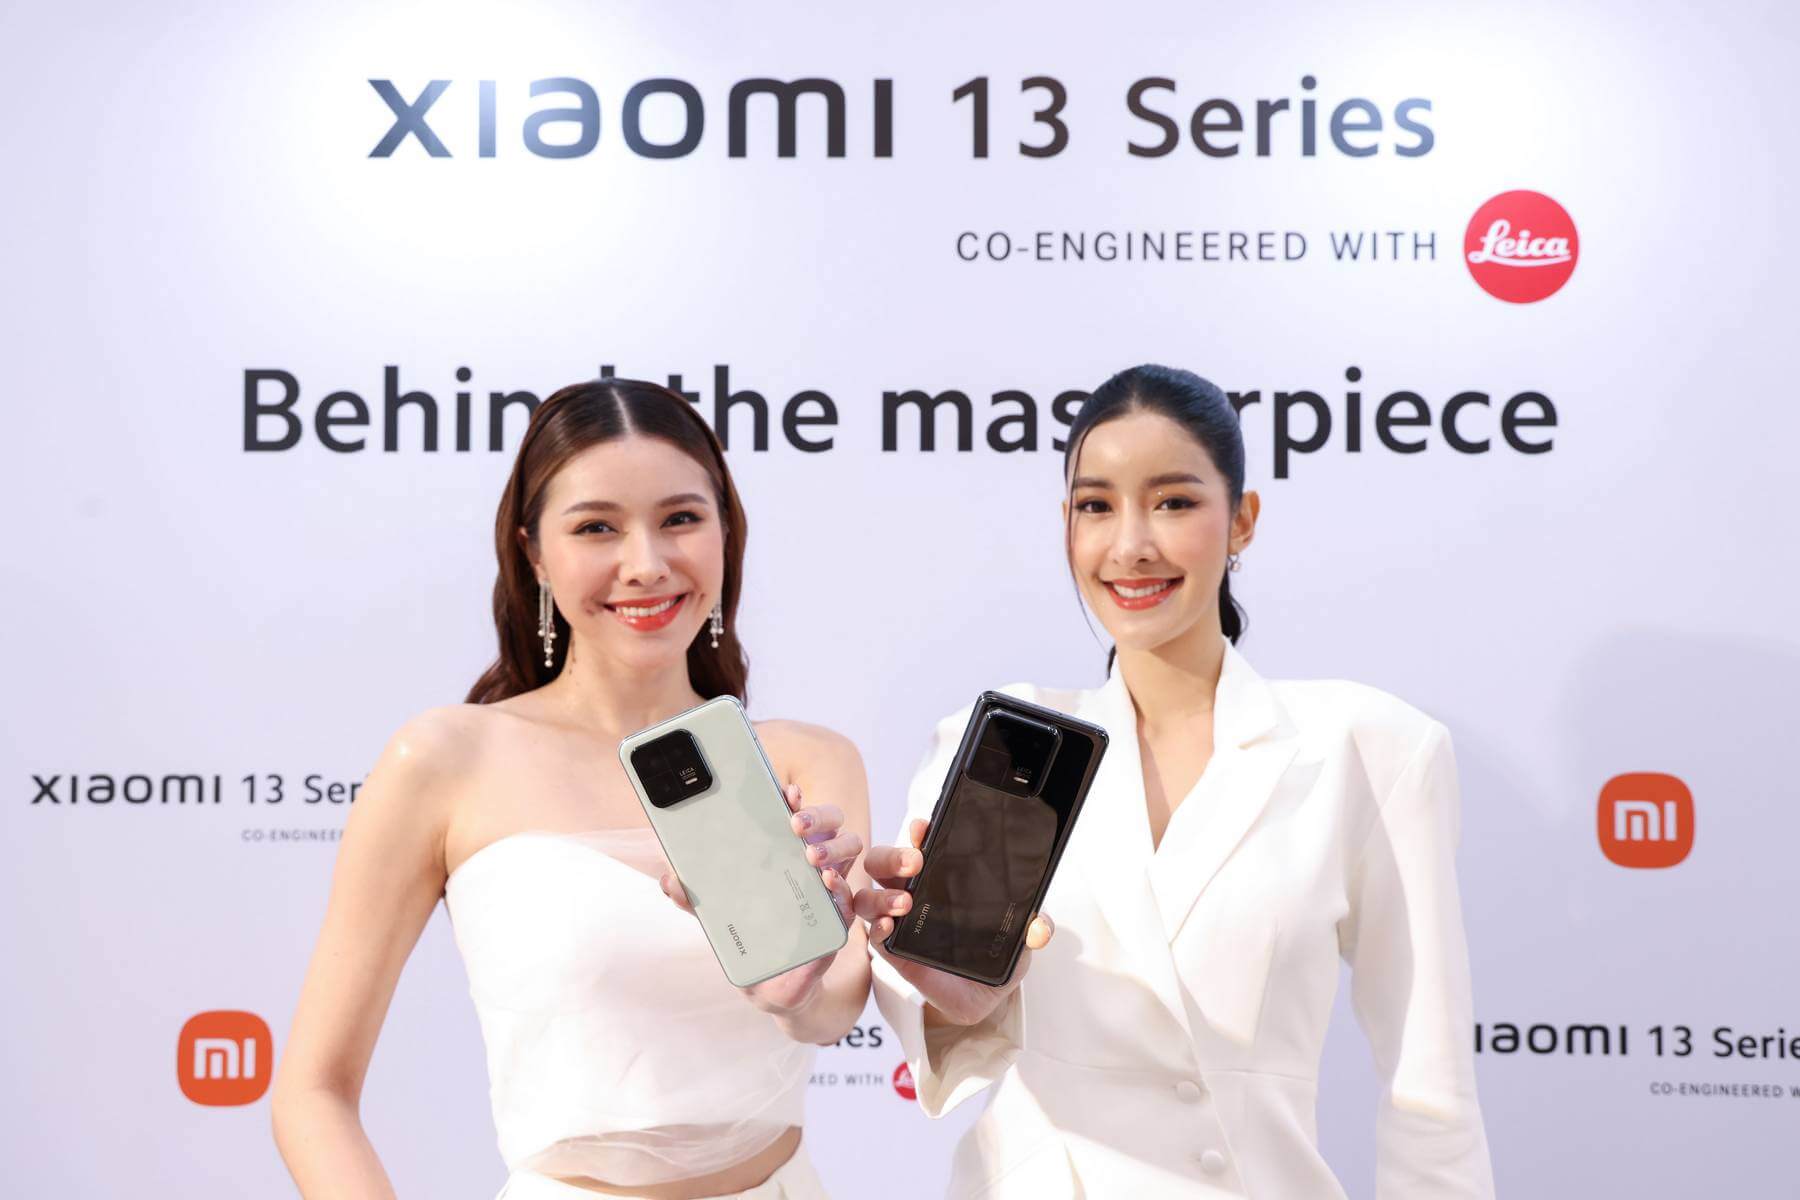 Xiaomi ประเทศไทย เปิดตัวสมาร์ทโฟนเรือธง Xiaomi 13 Series co-engineered with Leica ให้เป็นเจ้าของแล้วในราคาเริ่มต้น 29,990 บาท พร้อมวางจำหน่ายผลิตภัณฑ์ AIoT รุ่นใหม่มากมายให้คุณใช้ชีวิตแบบสมาร์ทไลฟ์